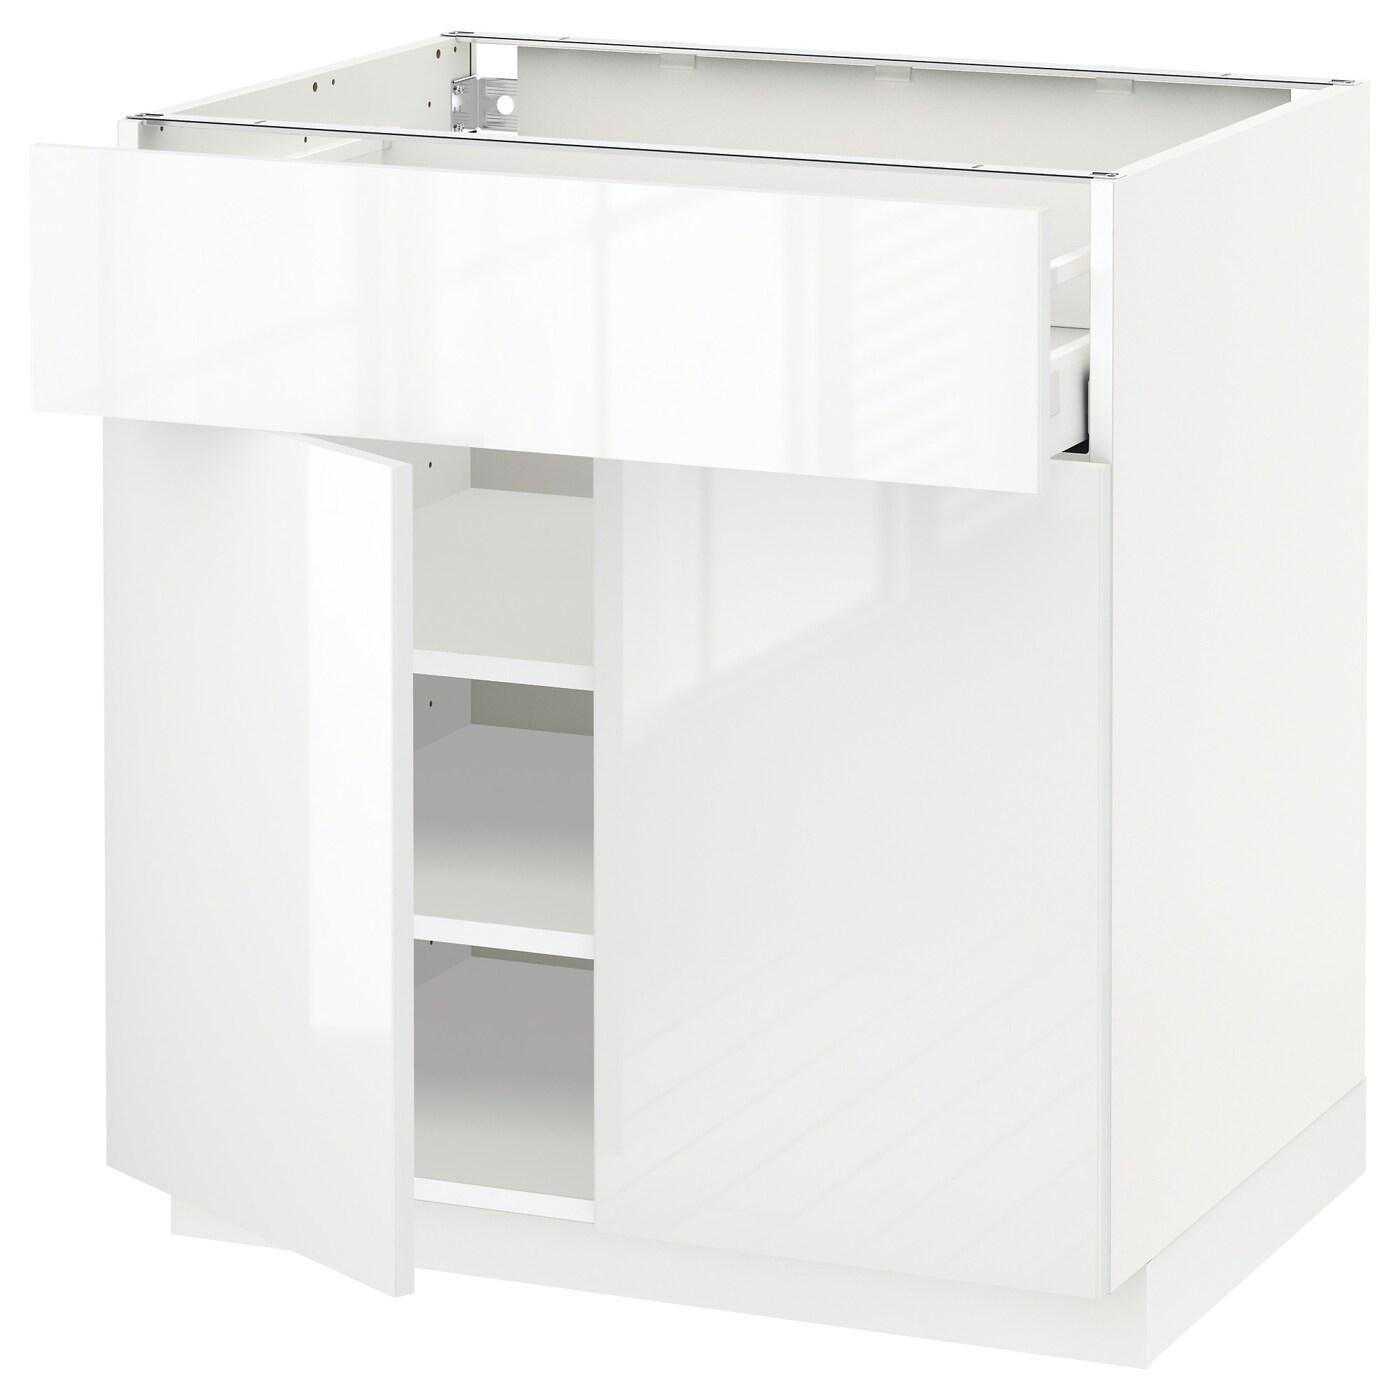 Напольный кухонный шкаф  - IKEA METOD MAXIMERA, 88x62x80см, белый, МЕТОД МАКСИМЕРА ИКЕА